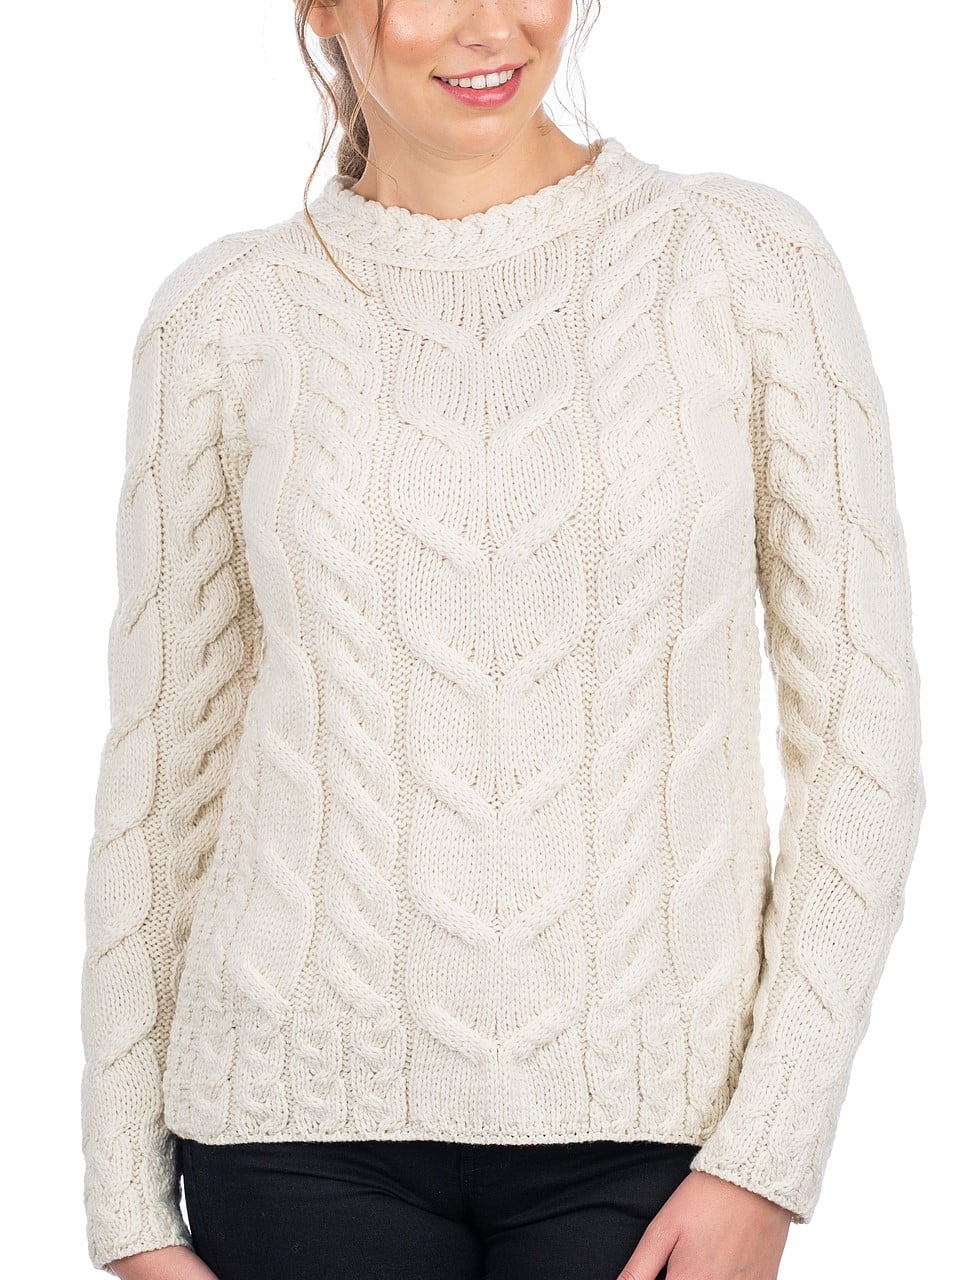 Turtleneck Wool Sweater Raglan Sleeves Brown Sweater 100% Felt Wool Sweater Unisex Wool Sweater Made To Order